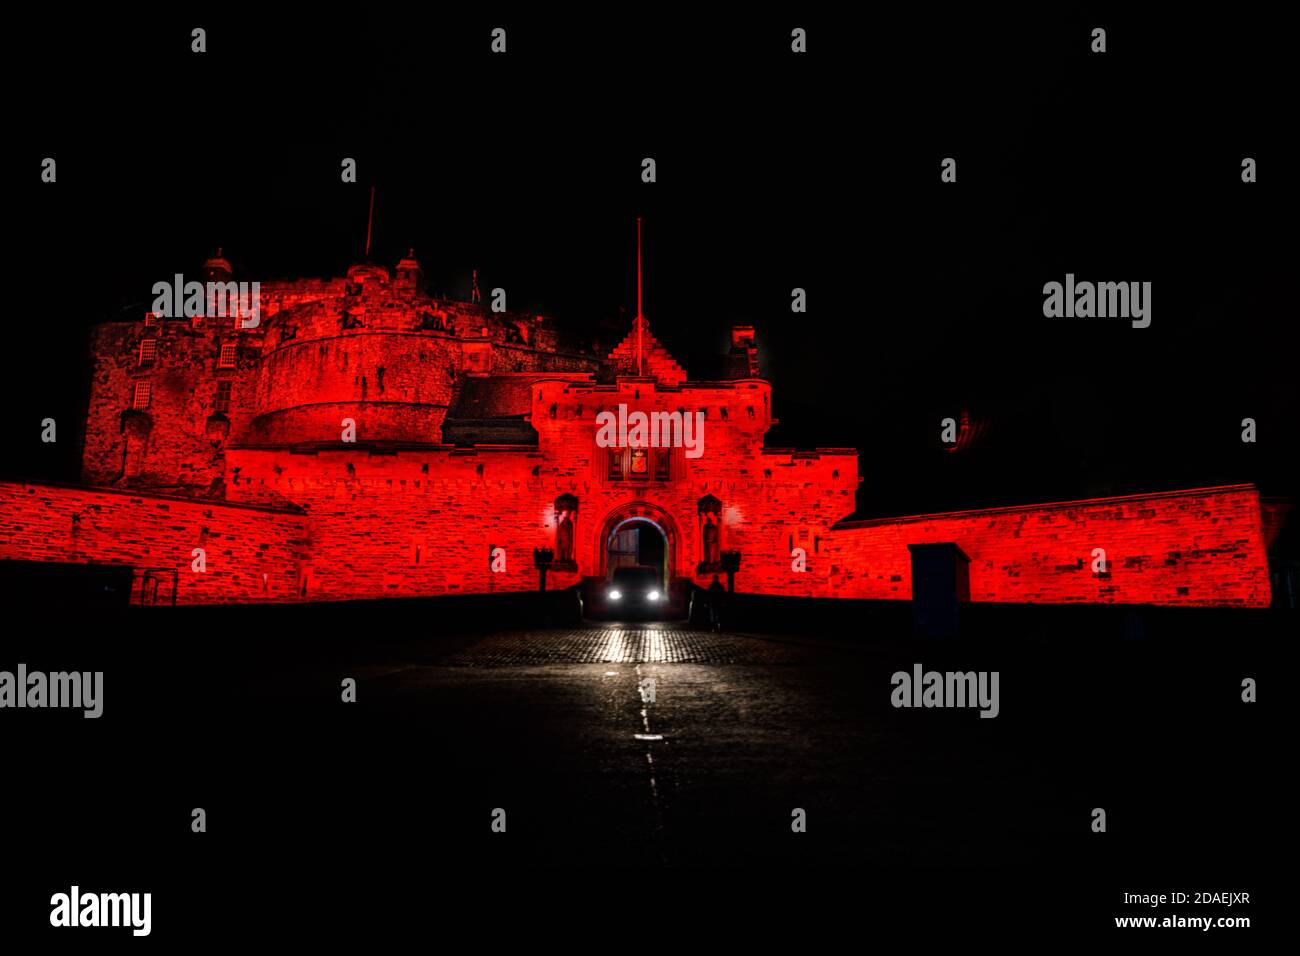 Mer 11 Novembre 2020. Edimburgo, Regno Unito. Il castello di Edimburgo si è illuminato in luce rossa come parte della campagna LightUpRed2020 organizzata da Poppy Scotland per commemorare il giorno della memoria 2020. COVID-19 ha avuto un impatto enorme sulla capacità dell’organizzazione di gestire le collezioni di strada quest’anno e la campagna Lit Up Red ha aiutato quest’anno a sensibilizzare l’opinione pubblica sull’appello scozzese per il papavero. Foto Stock